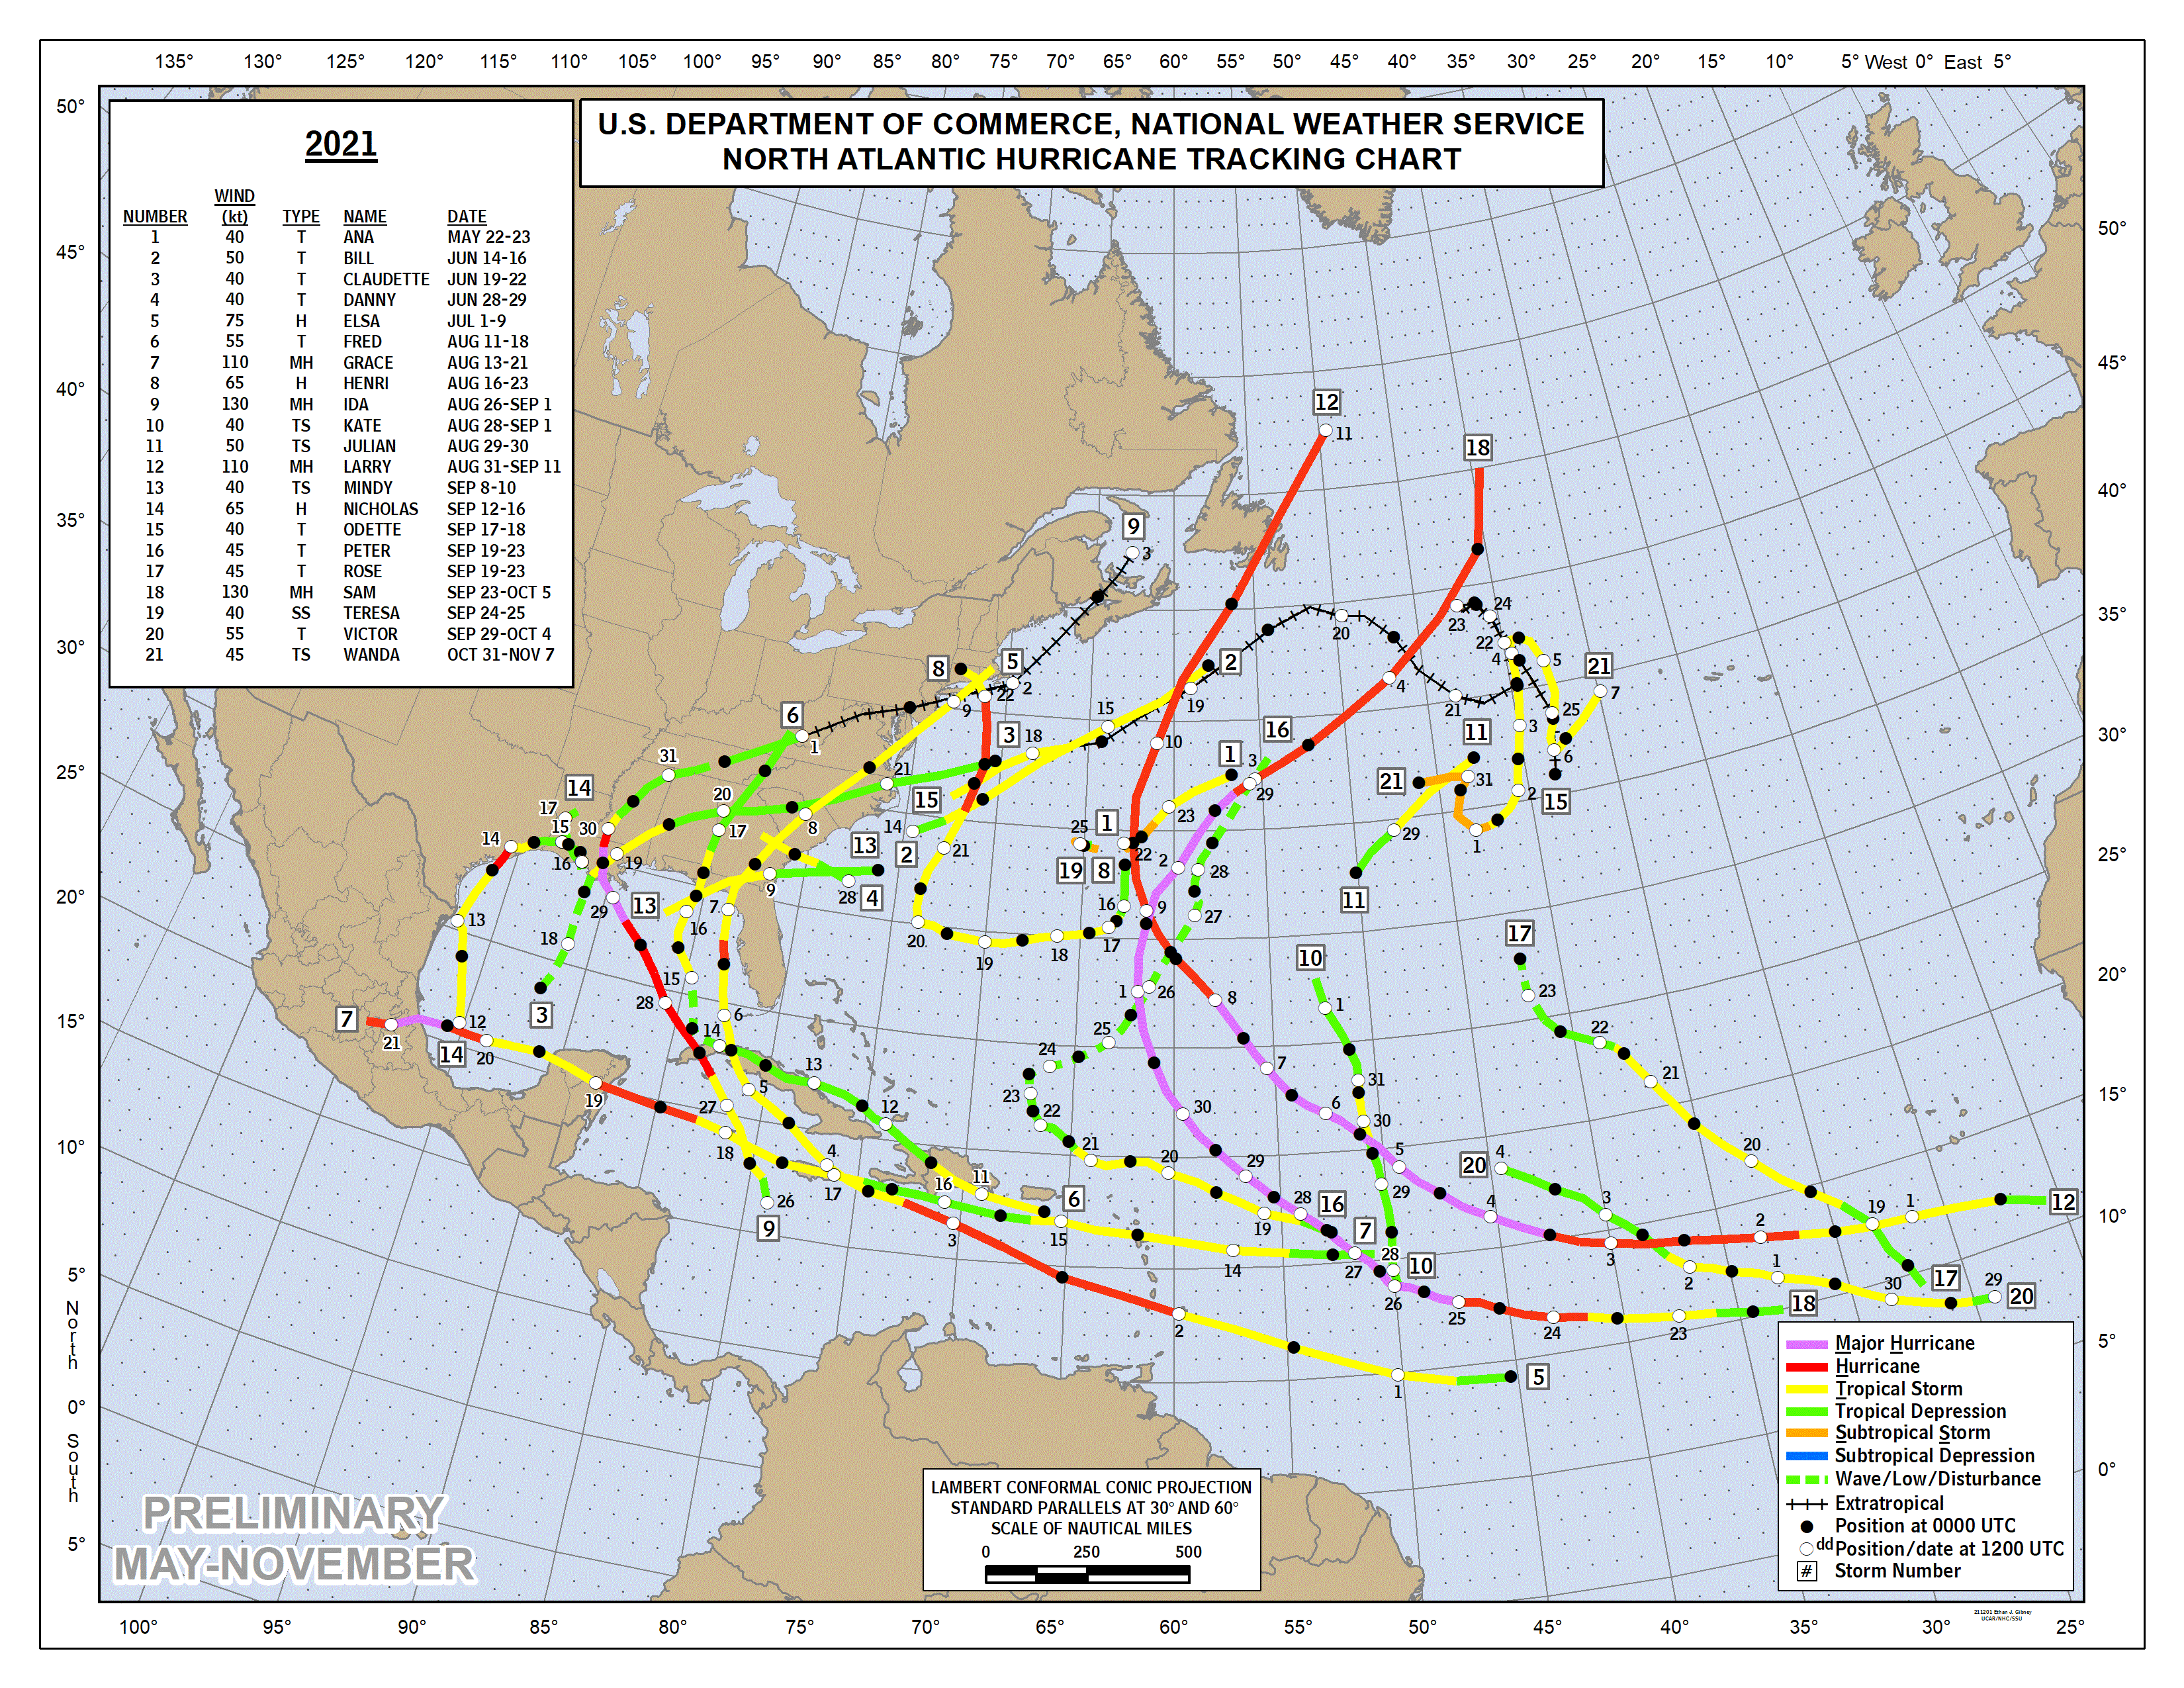 Tendencias de la temporada 2022 de huracanes en el Atlántico